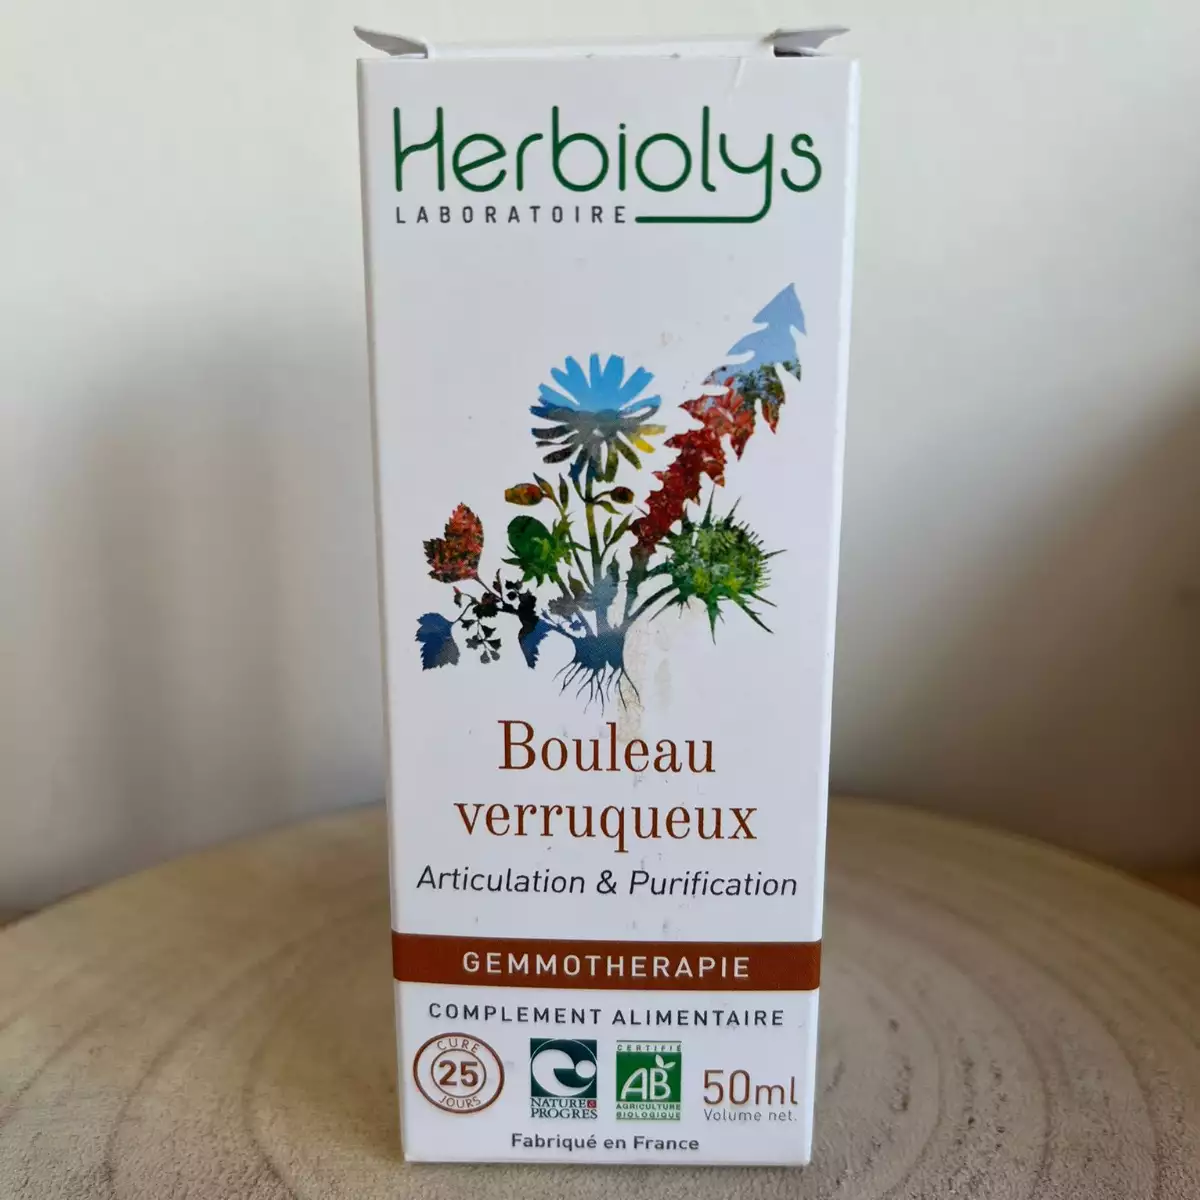 Bouleau verruqueux - Herbiolys